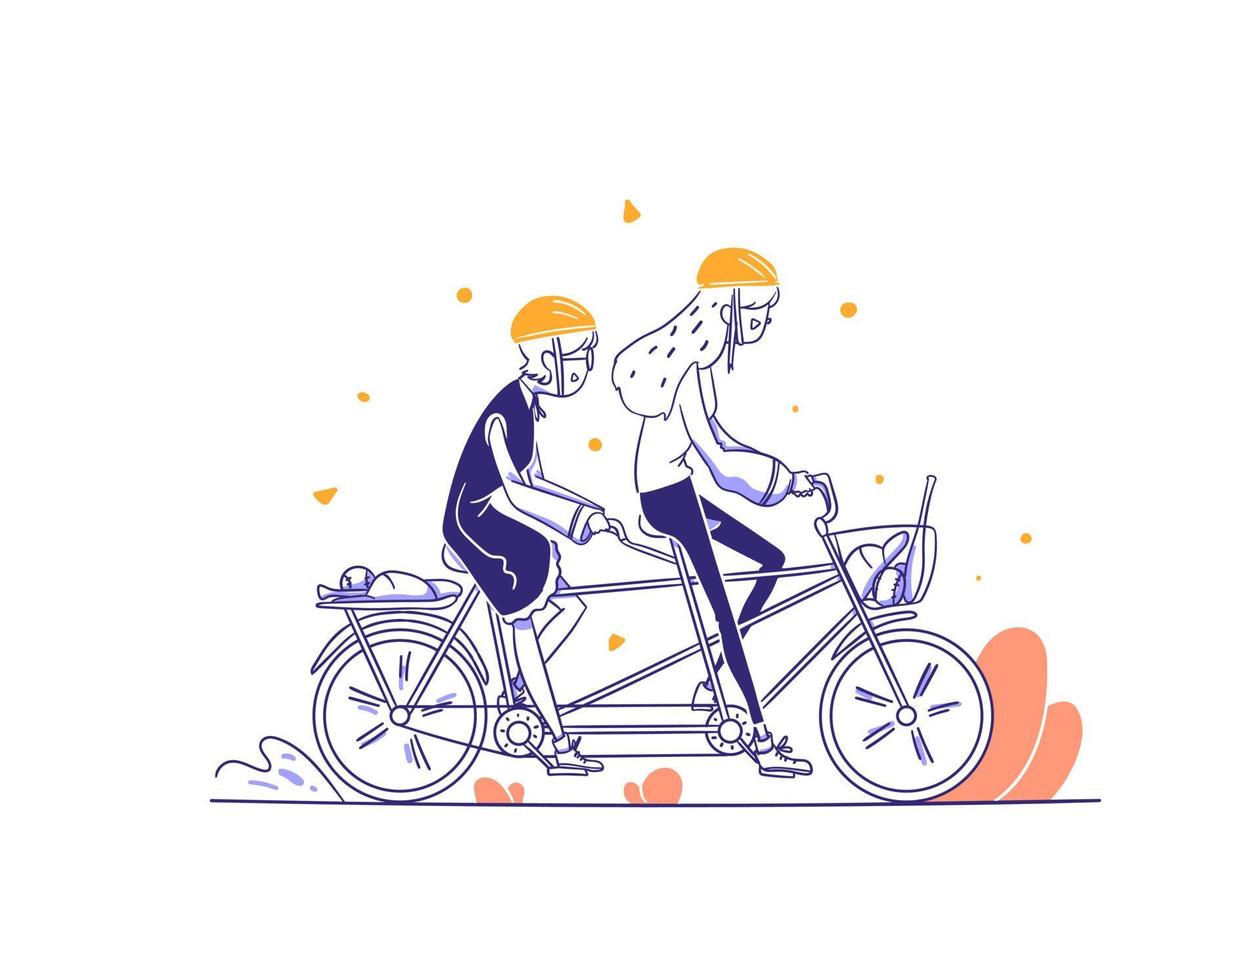 e-commerce categoria sport le persone guidano l'illustrazione del concetto di bici in tandem in stile di design disegnato a mano di contorno vettore